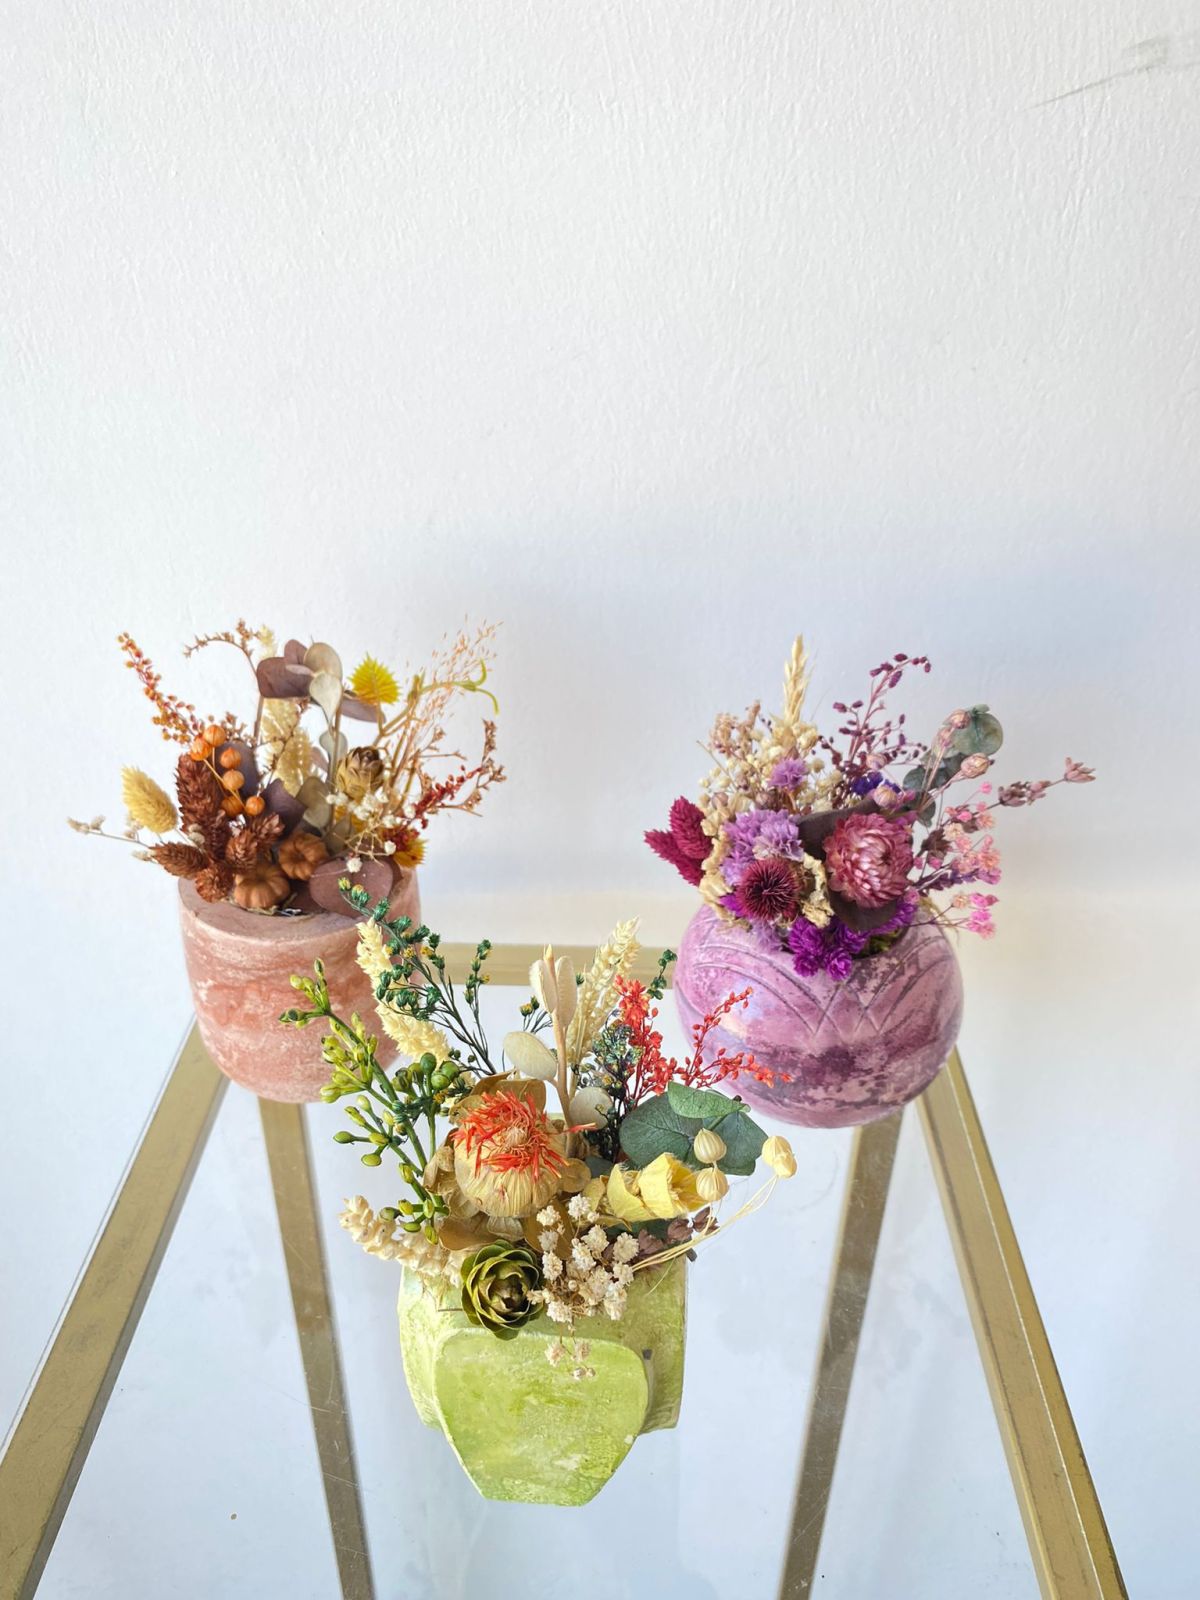 Ghiveci decorativ cu flori artificiale, homs seria A620,17x5.5x9 cm,30344